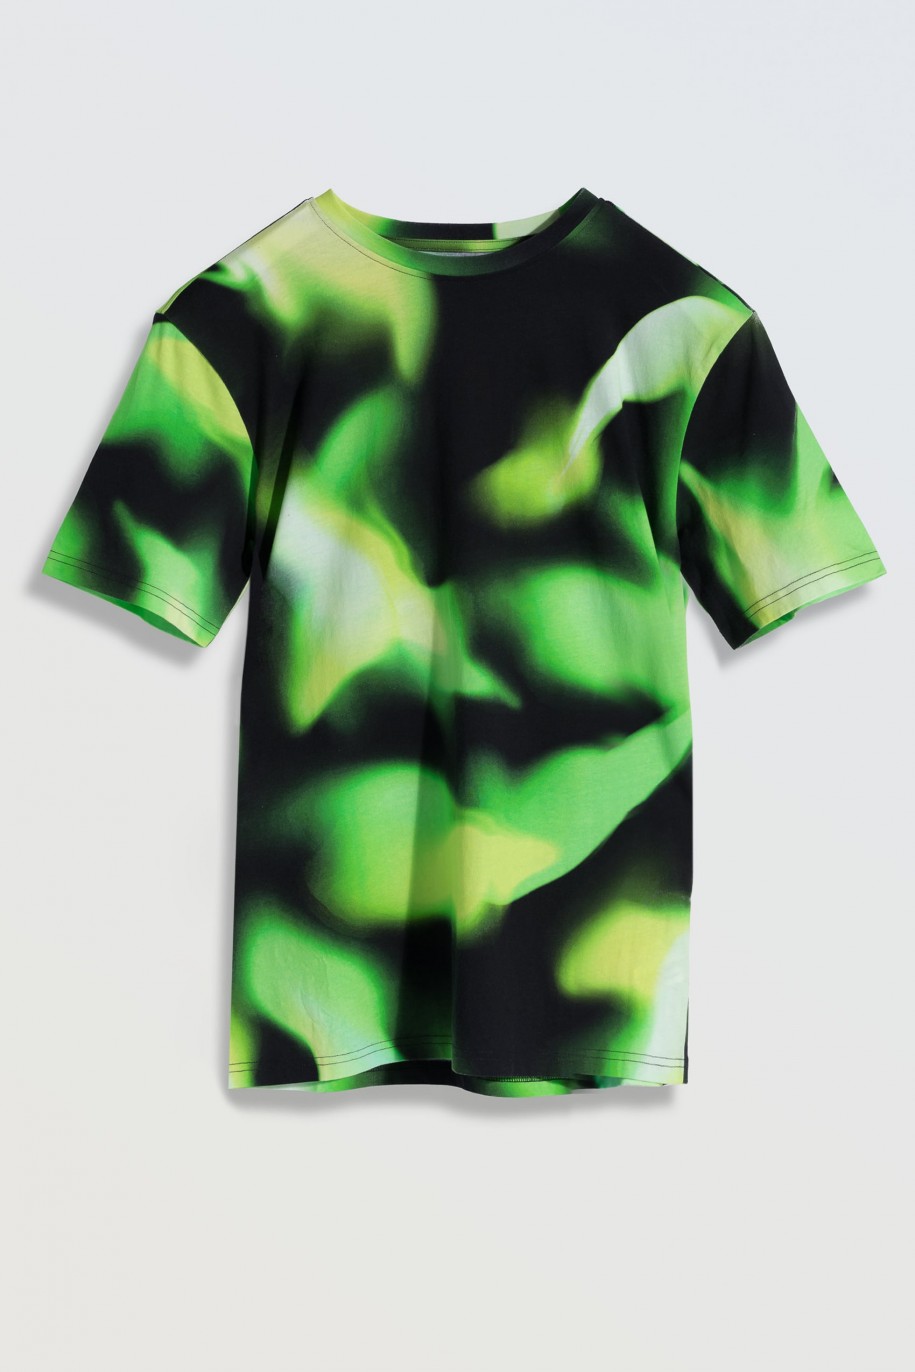 Czarny T-Shirt z artystycznym nadrukiem w kolorze energetycznej zieleni - 46294